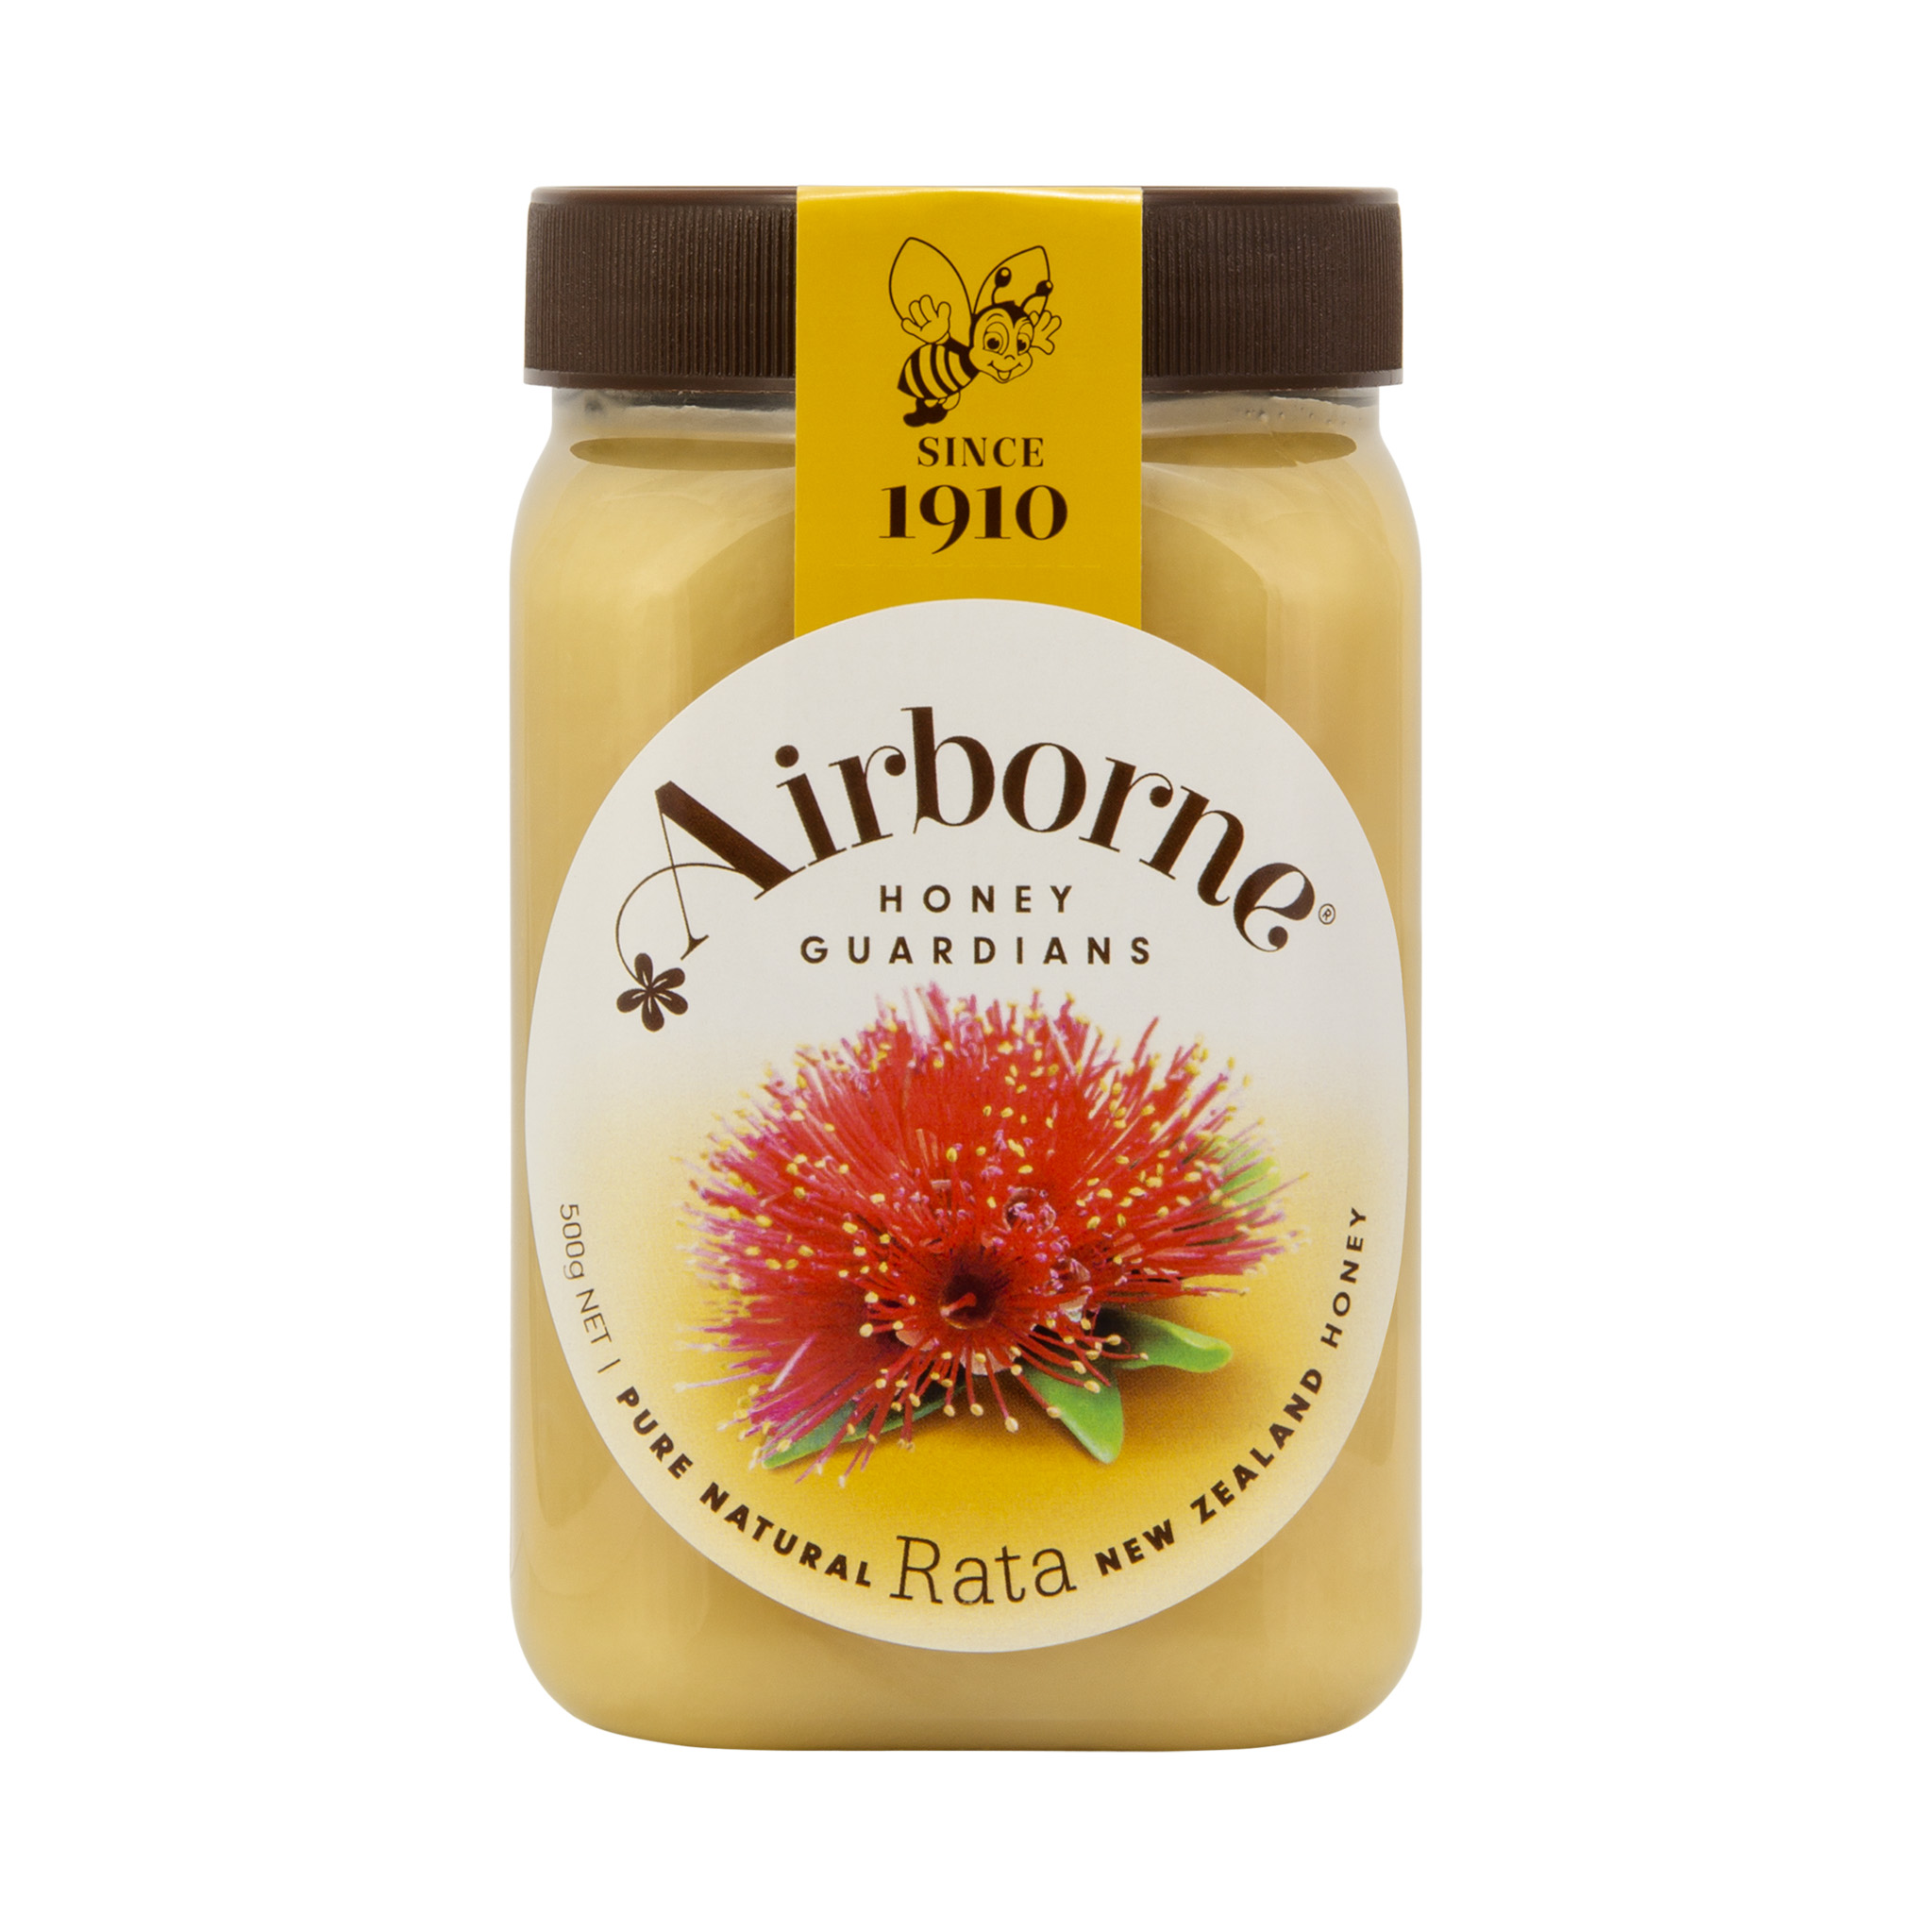 Airborne Rata Honey Creamed